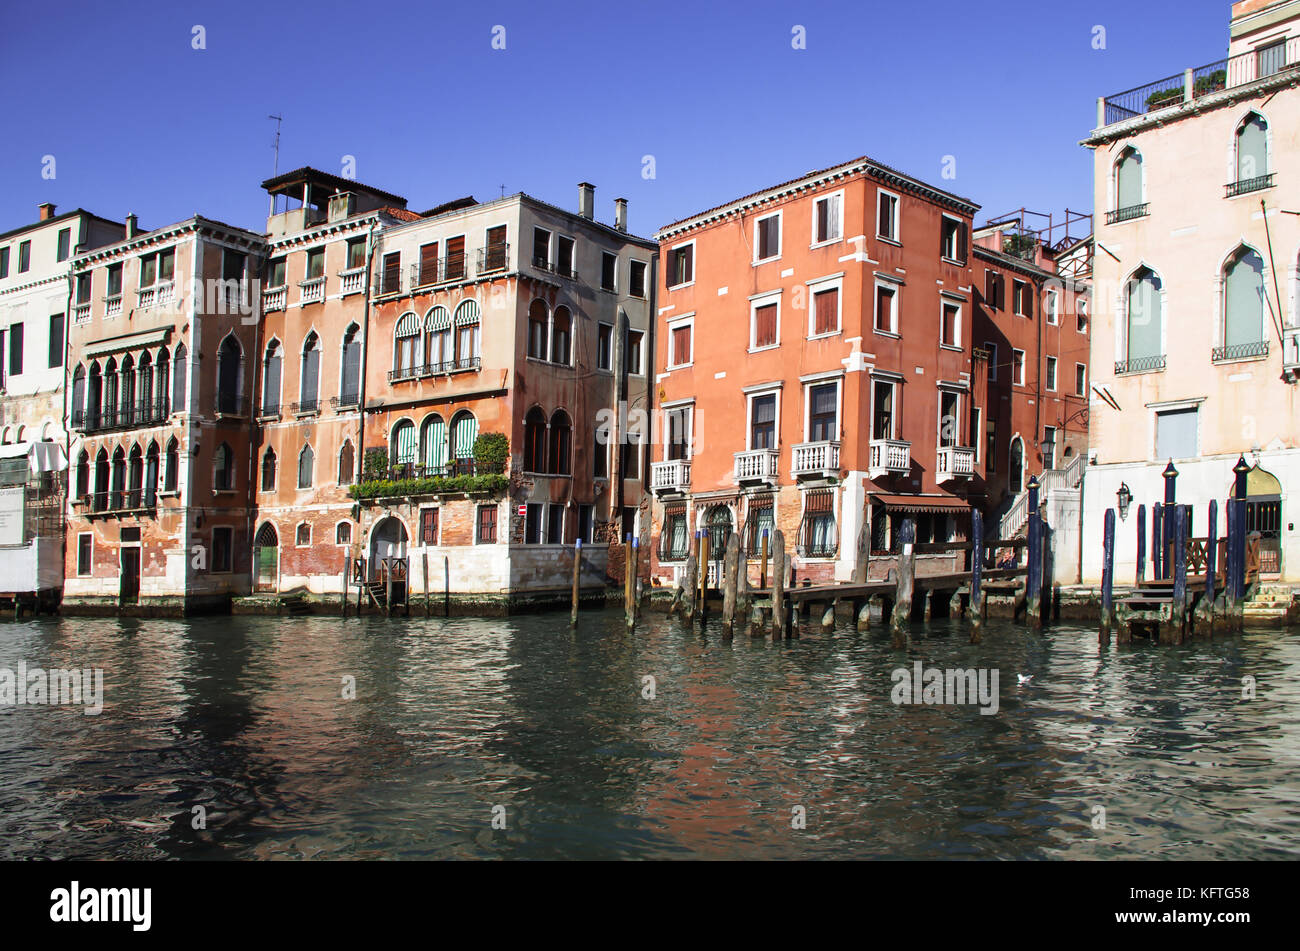 Elegante Villen mit Blick auf den Großen Kanal, jubeln für Jahrhunderte mit ihrer lebhaften und leuchtenden Farben, die venezianische Atmosphäre Stockfoto